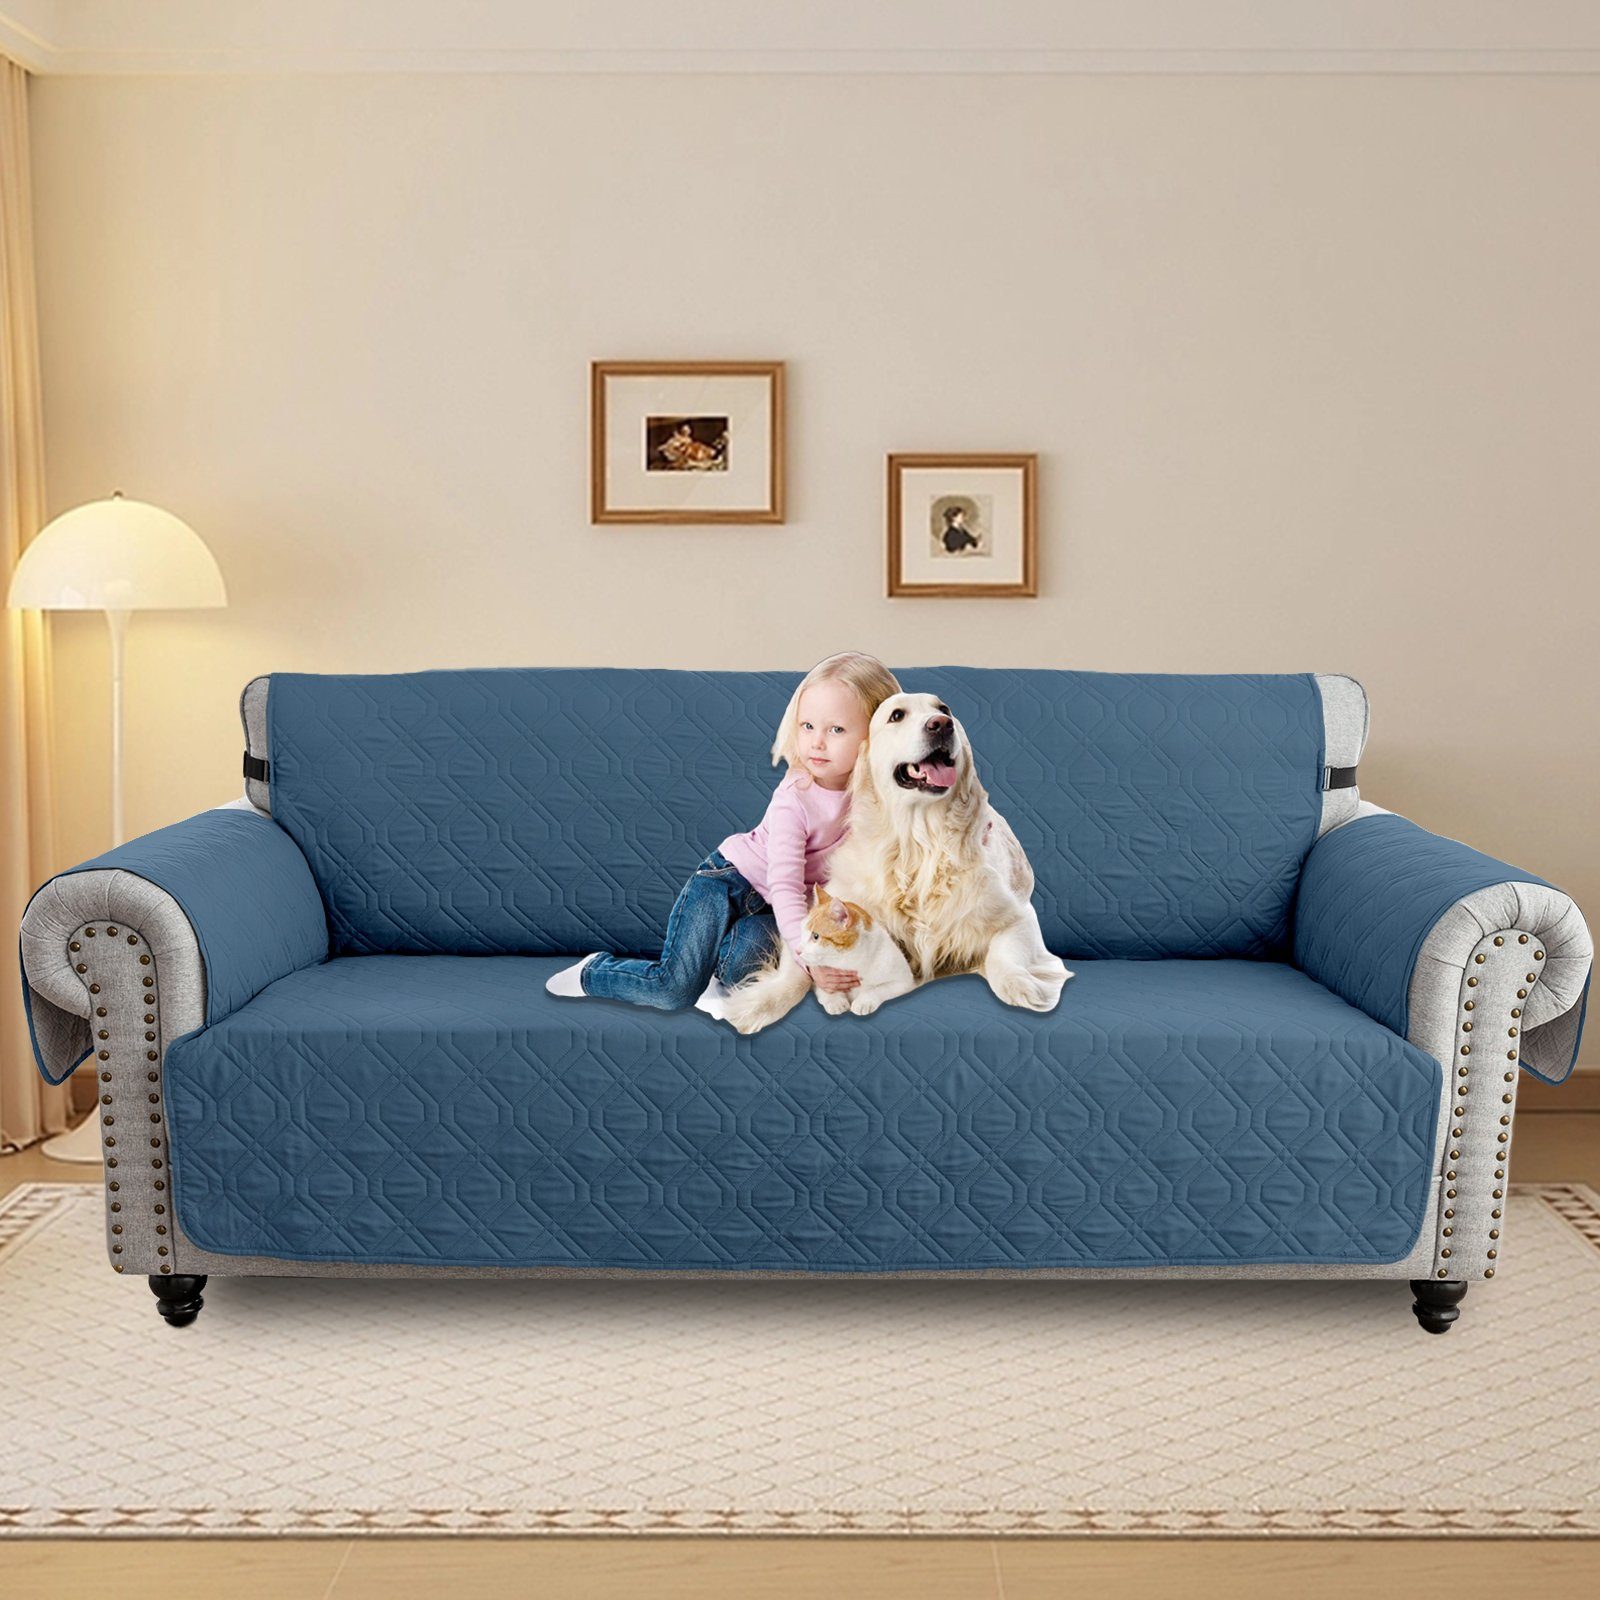 Sofabezug Wasserdicht Gesteppter Haustier Hunde Couch Anti-Rutsch Schutz 1-3Sitz, Sunicol, Sesselschoner Sesselbezug Sofa Überwurf Armlehnenauflage Blau